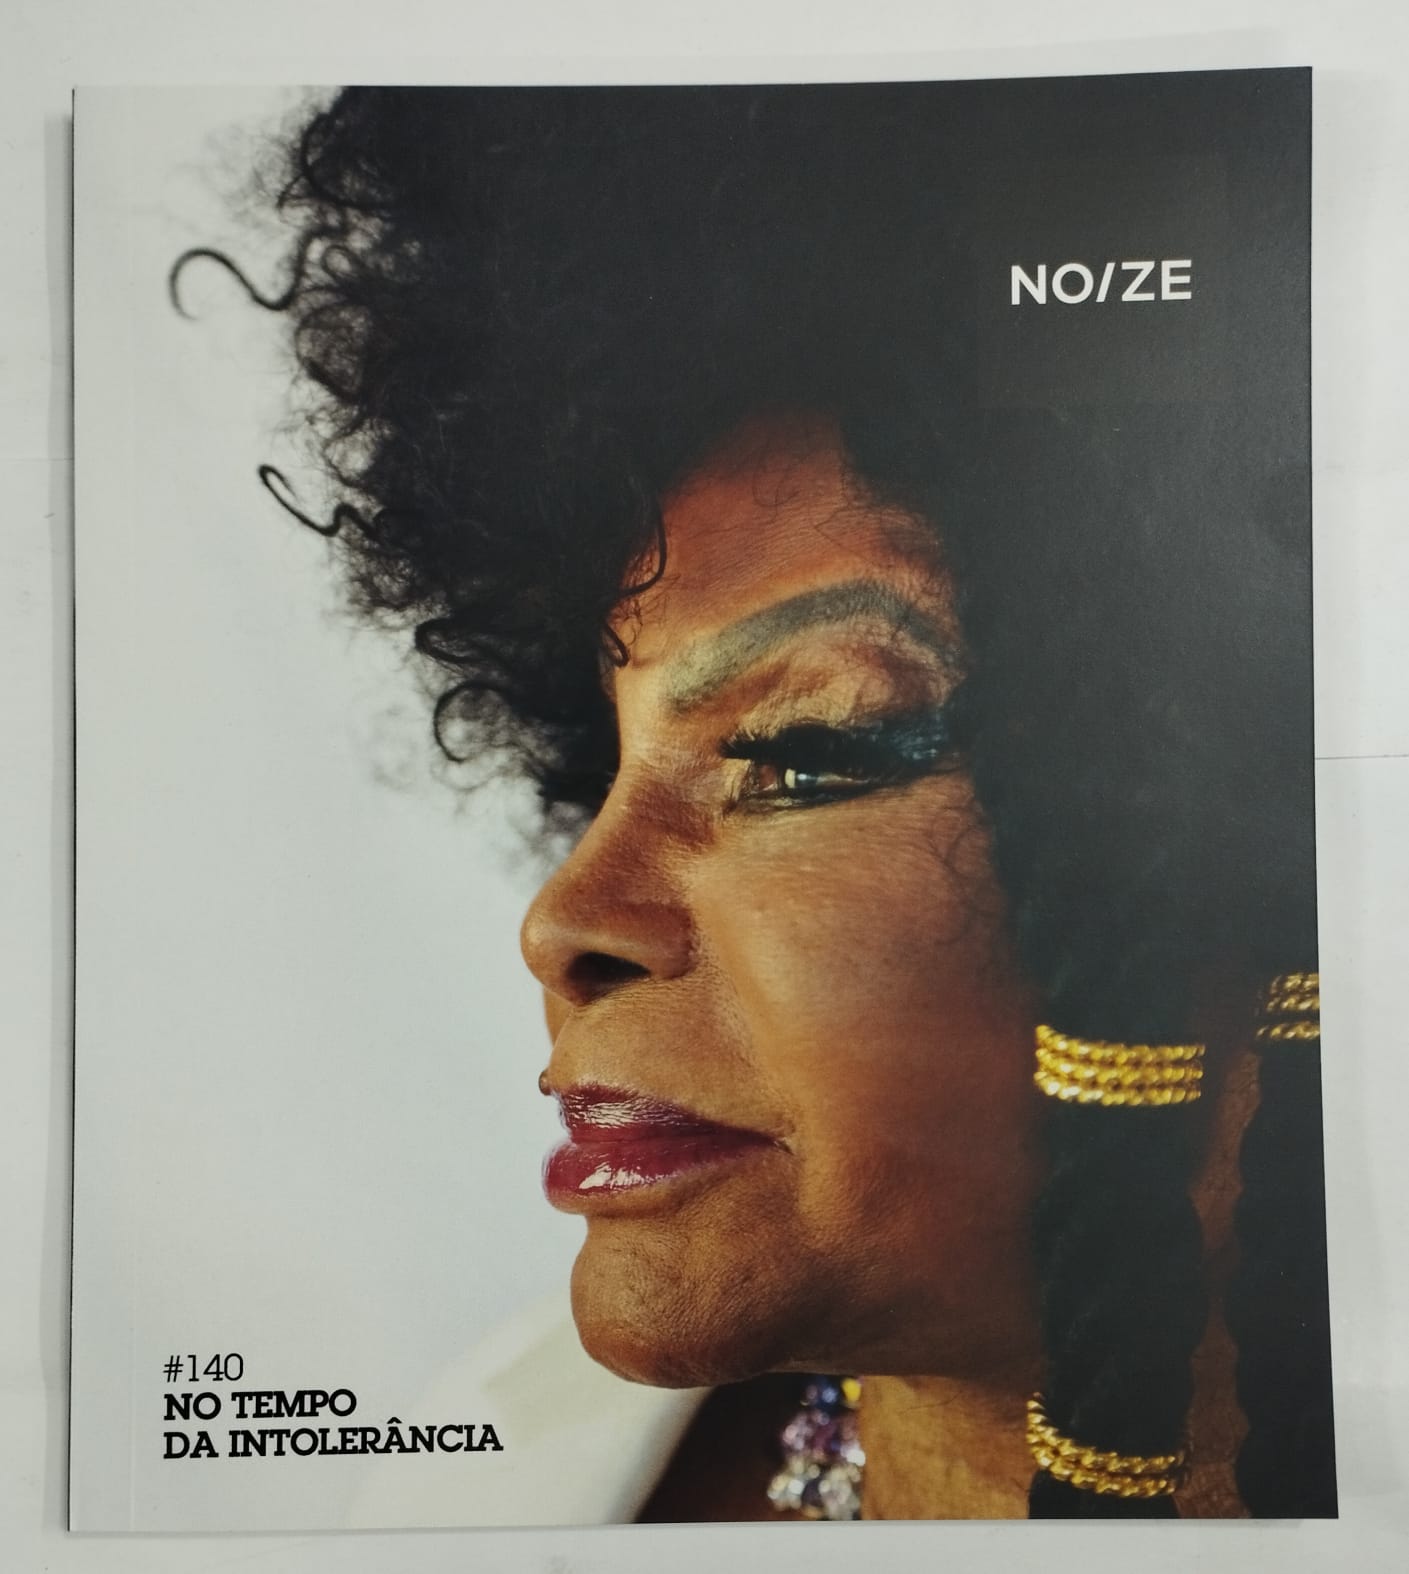 Elza Soares ‎– No Tempo da Intolerância (Álbum)